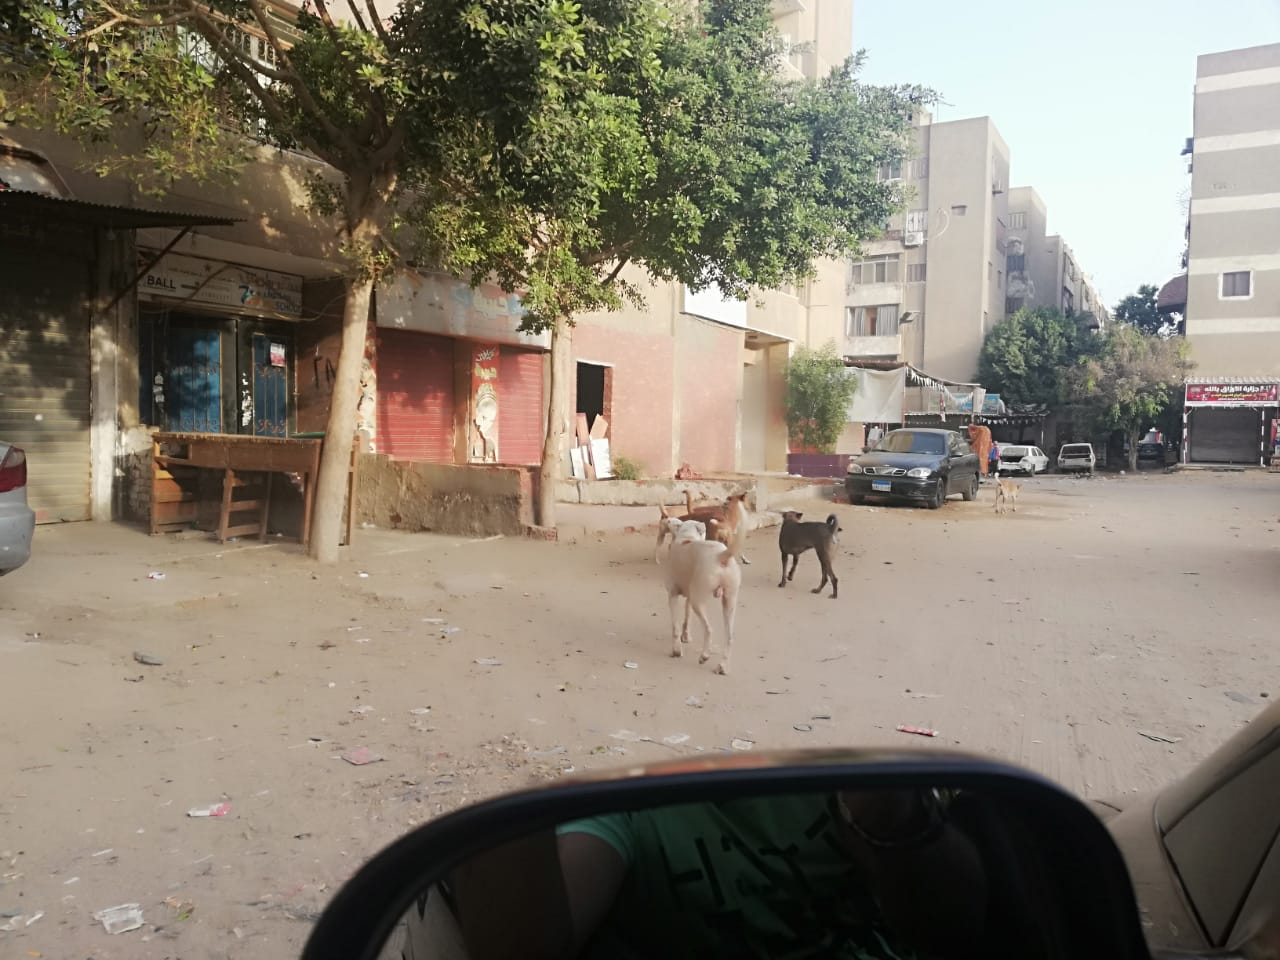  انتشار الكلاب الضالة بشوارع صقر قريش فى مدينة نصر  (2)